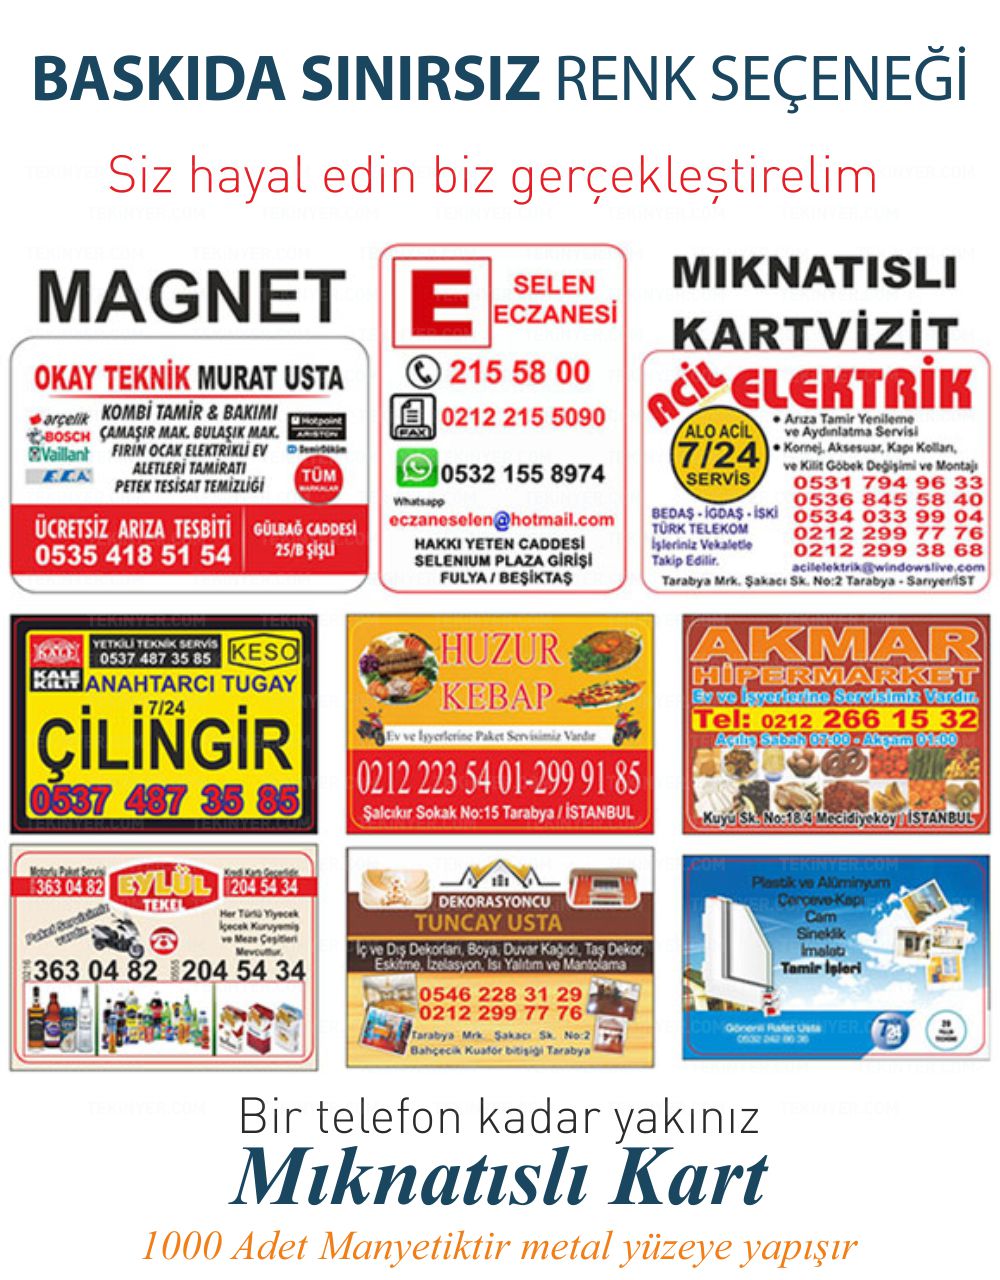 Taksim Mıknatıslı Kartvizit Sınırsız Renk Baskı Seçeneği